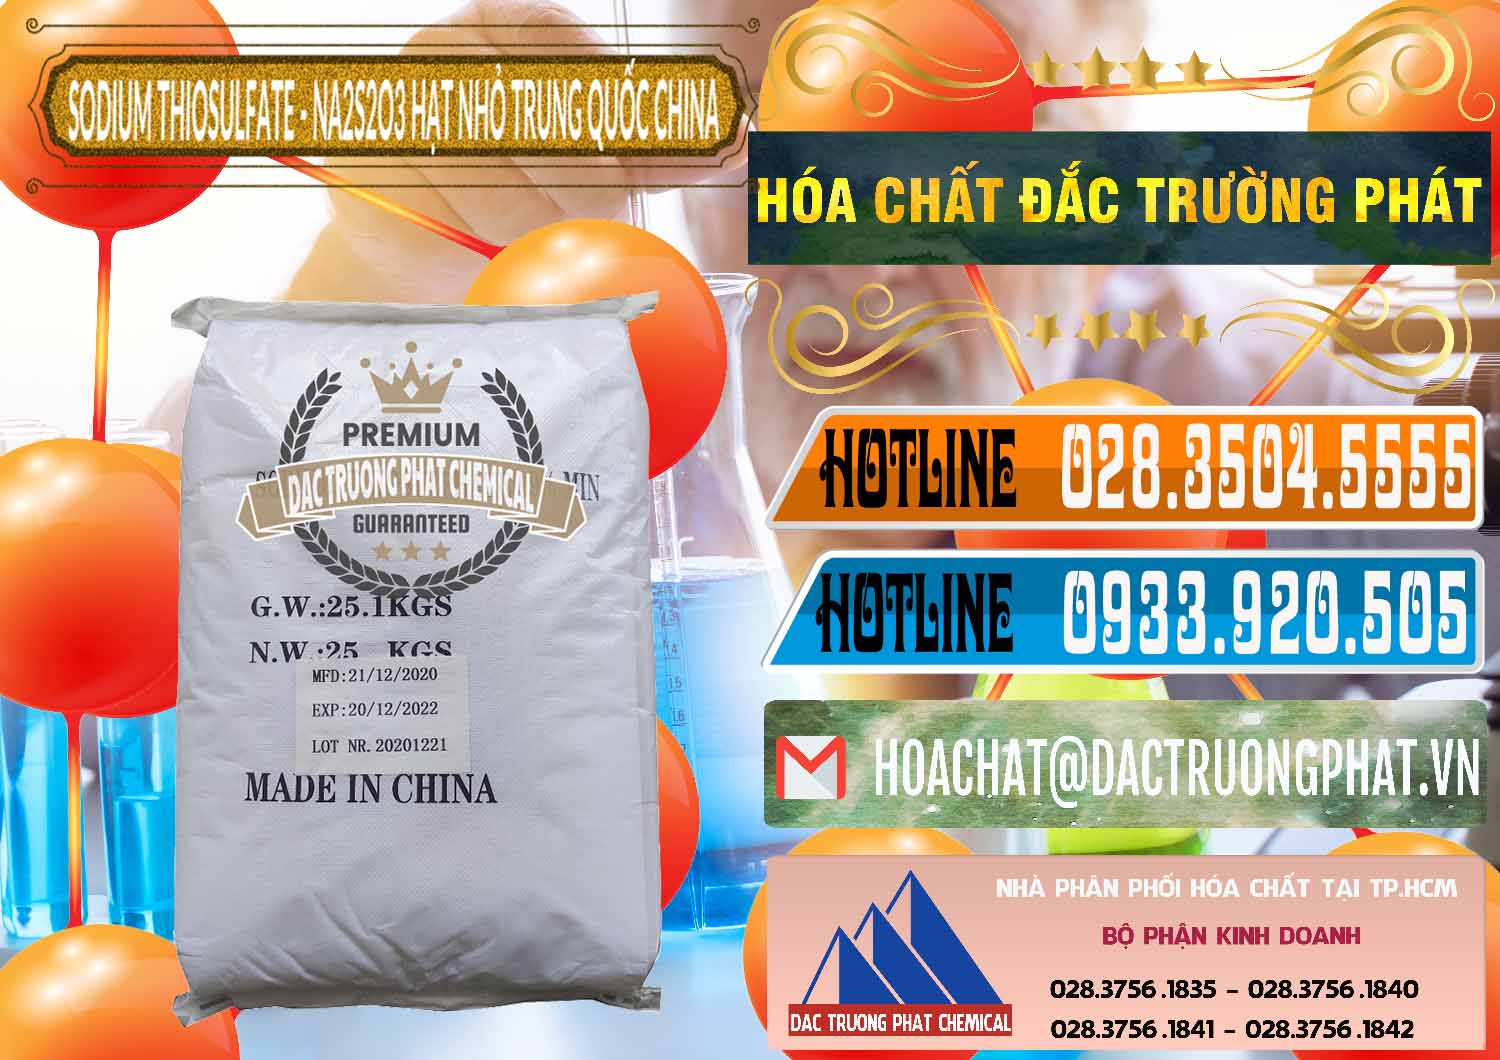 Cty chuyên nhập khẩu và bán Sodium Thiosulfate - NA2S2O3 Hạt Nhỏ Trung Quốc China - 0204 - Nhà phân phối ( kinh doanh ) hóa chất tại TP.HCM - stmp.net